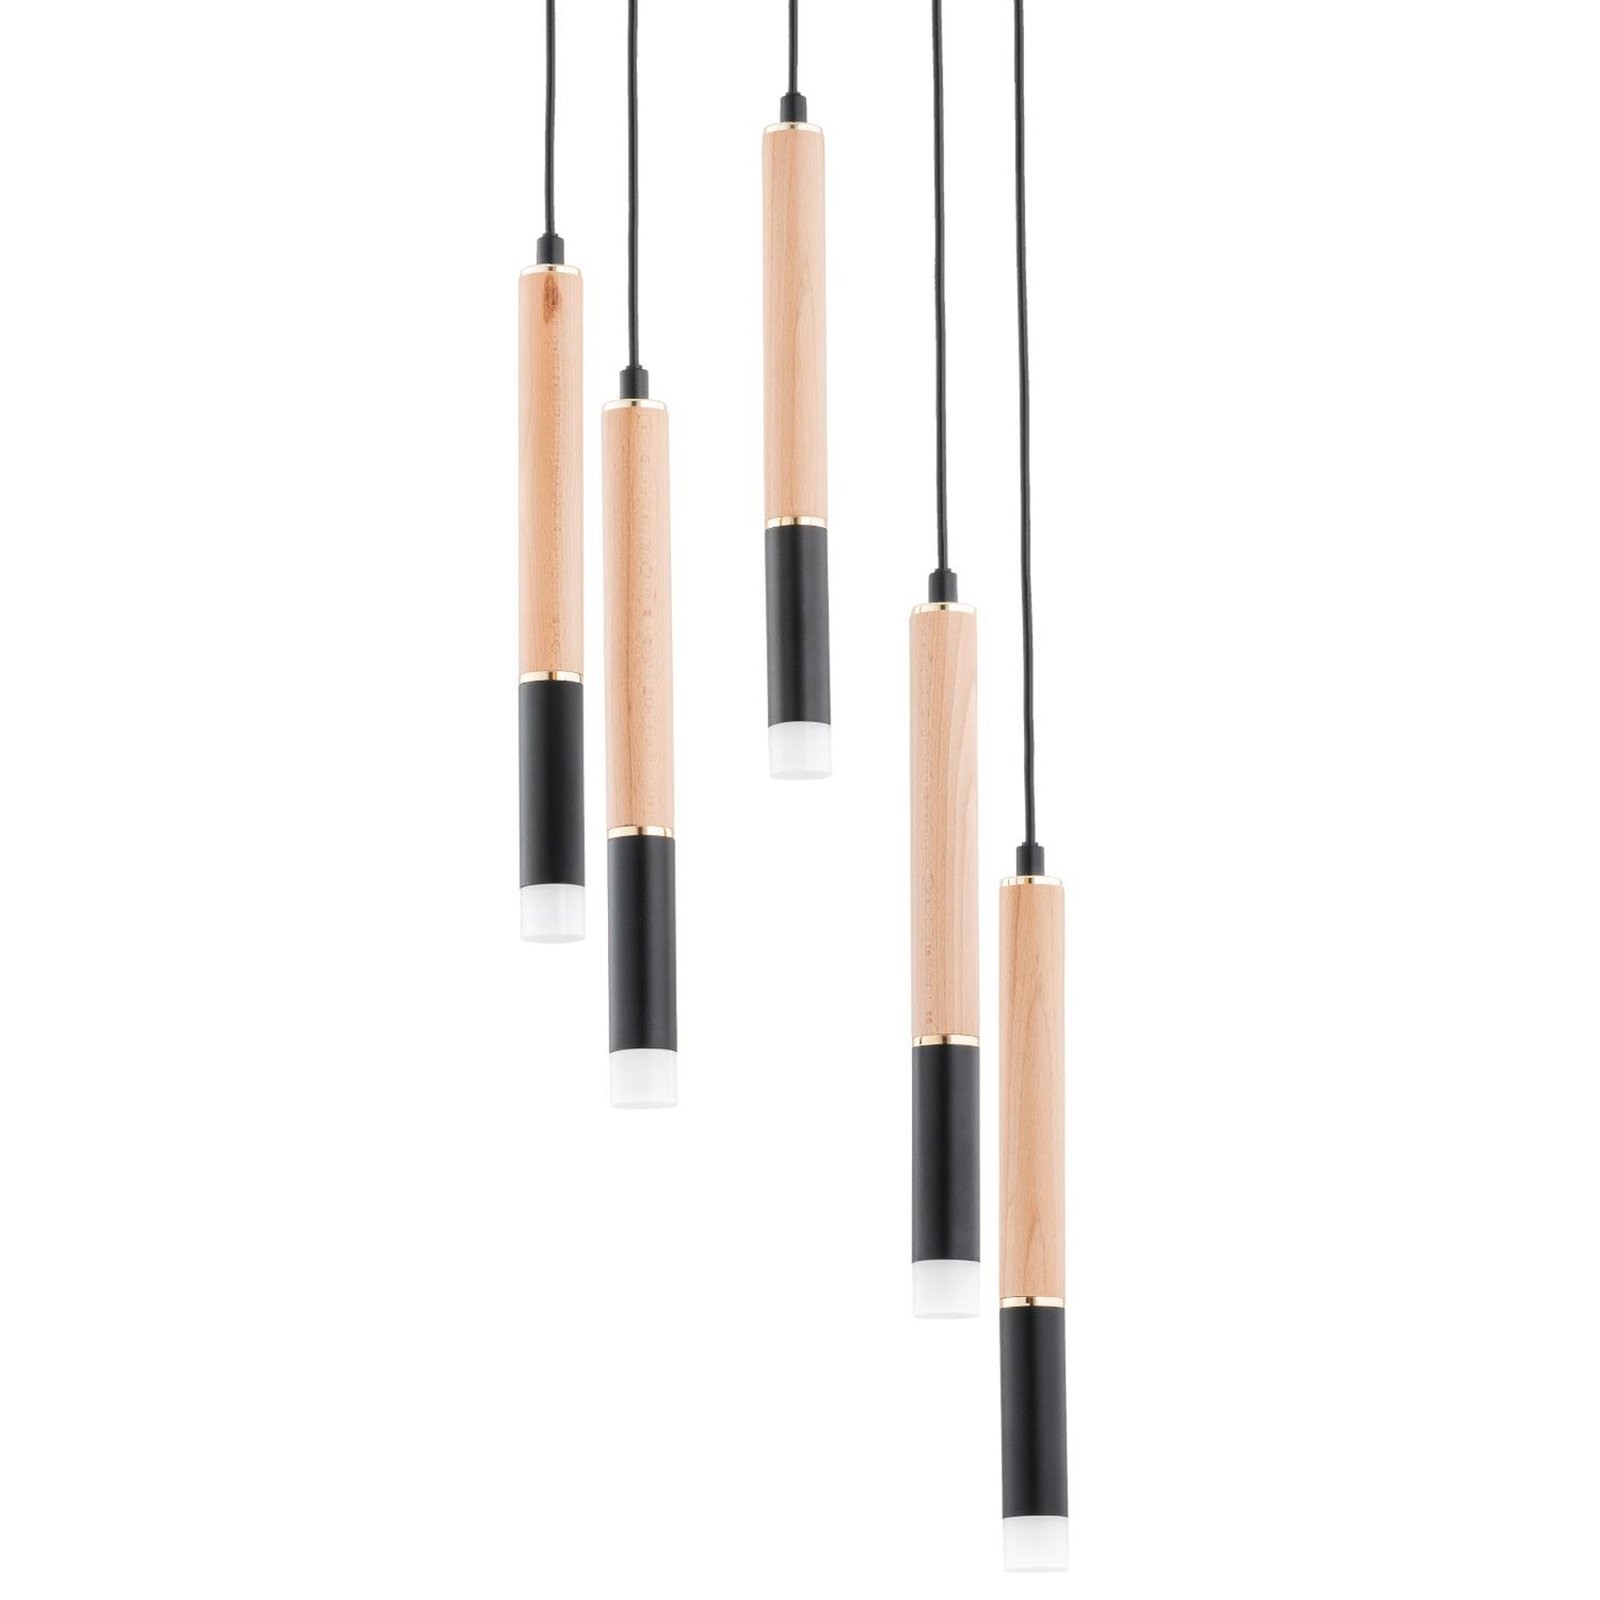 Rodeo hanglamp, zwart / houtkleurig, 5-lamps